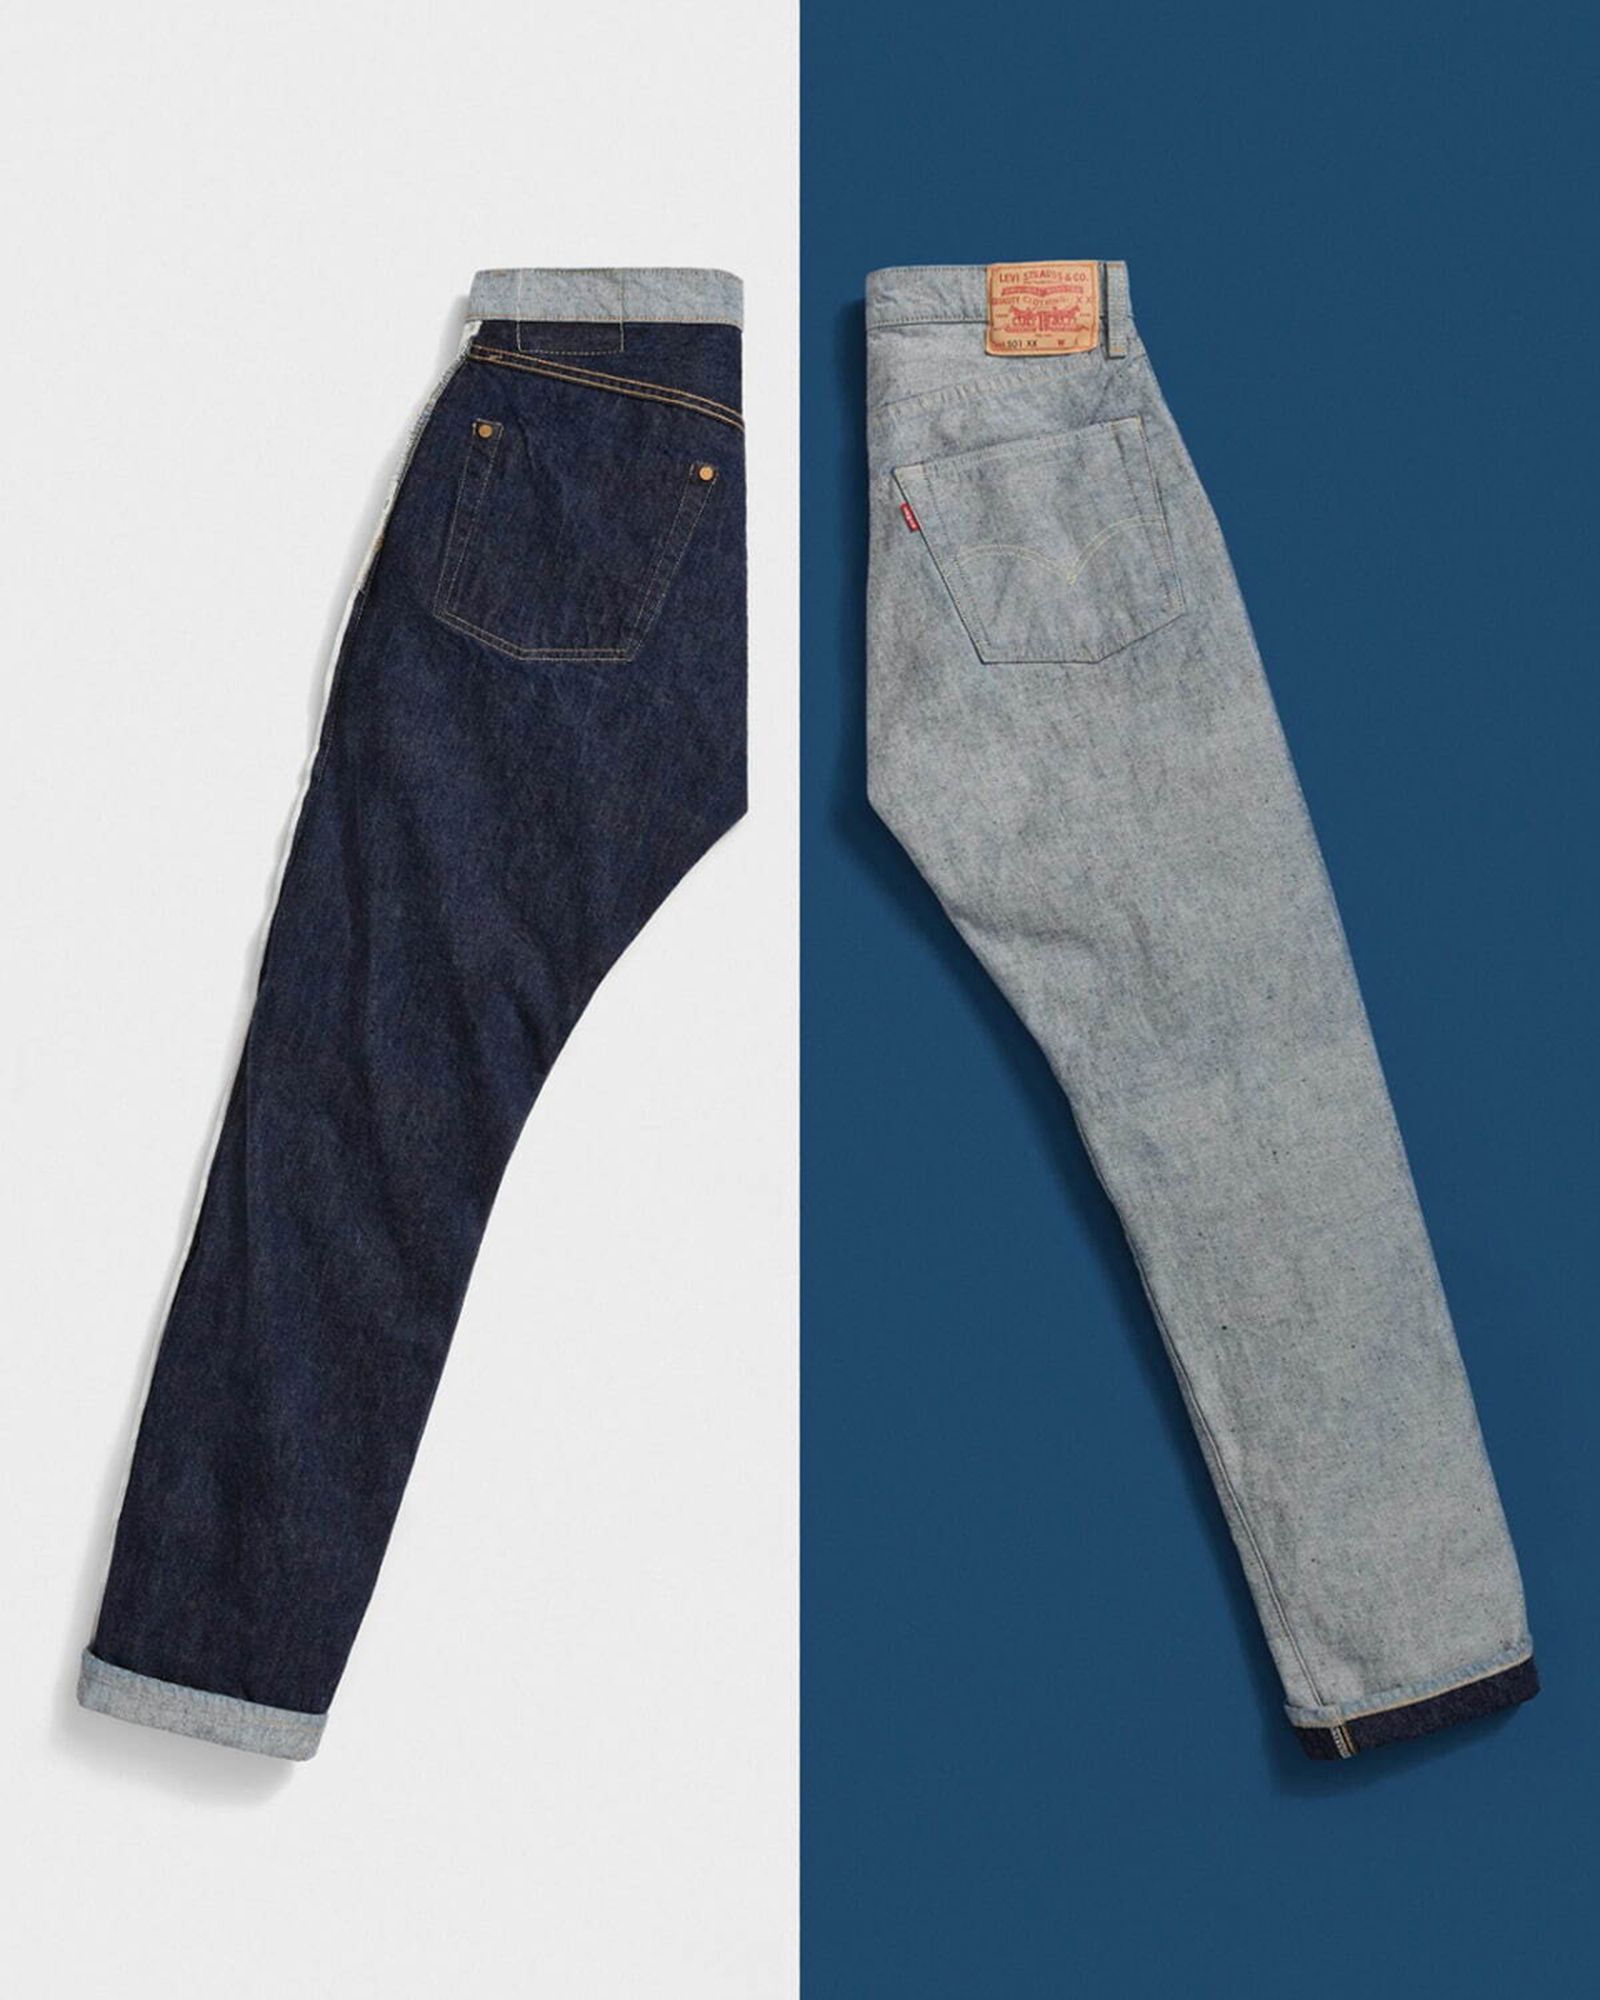 levis-501-inside-jeans-release